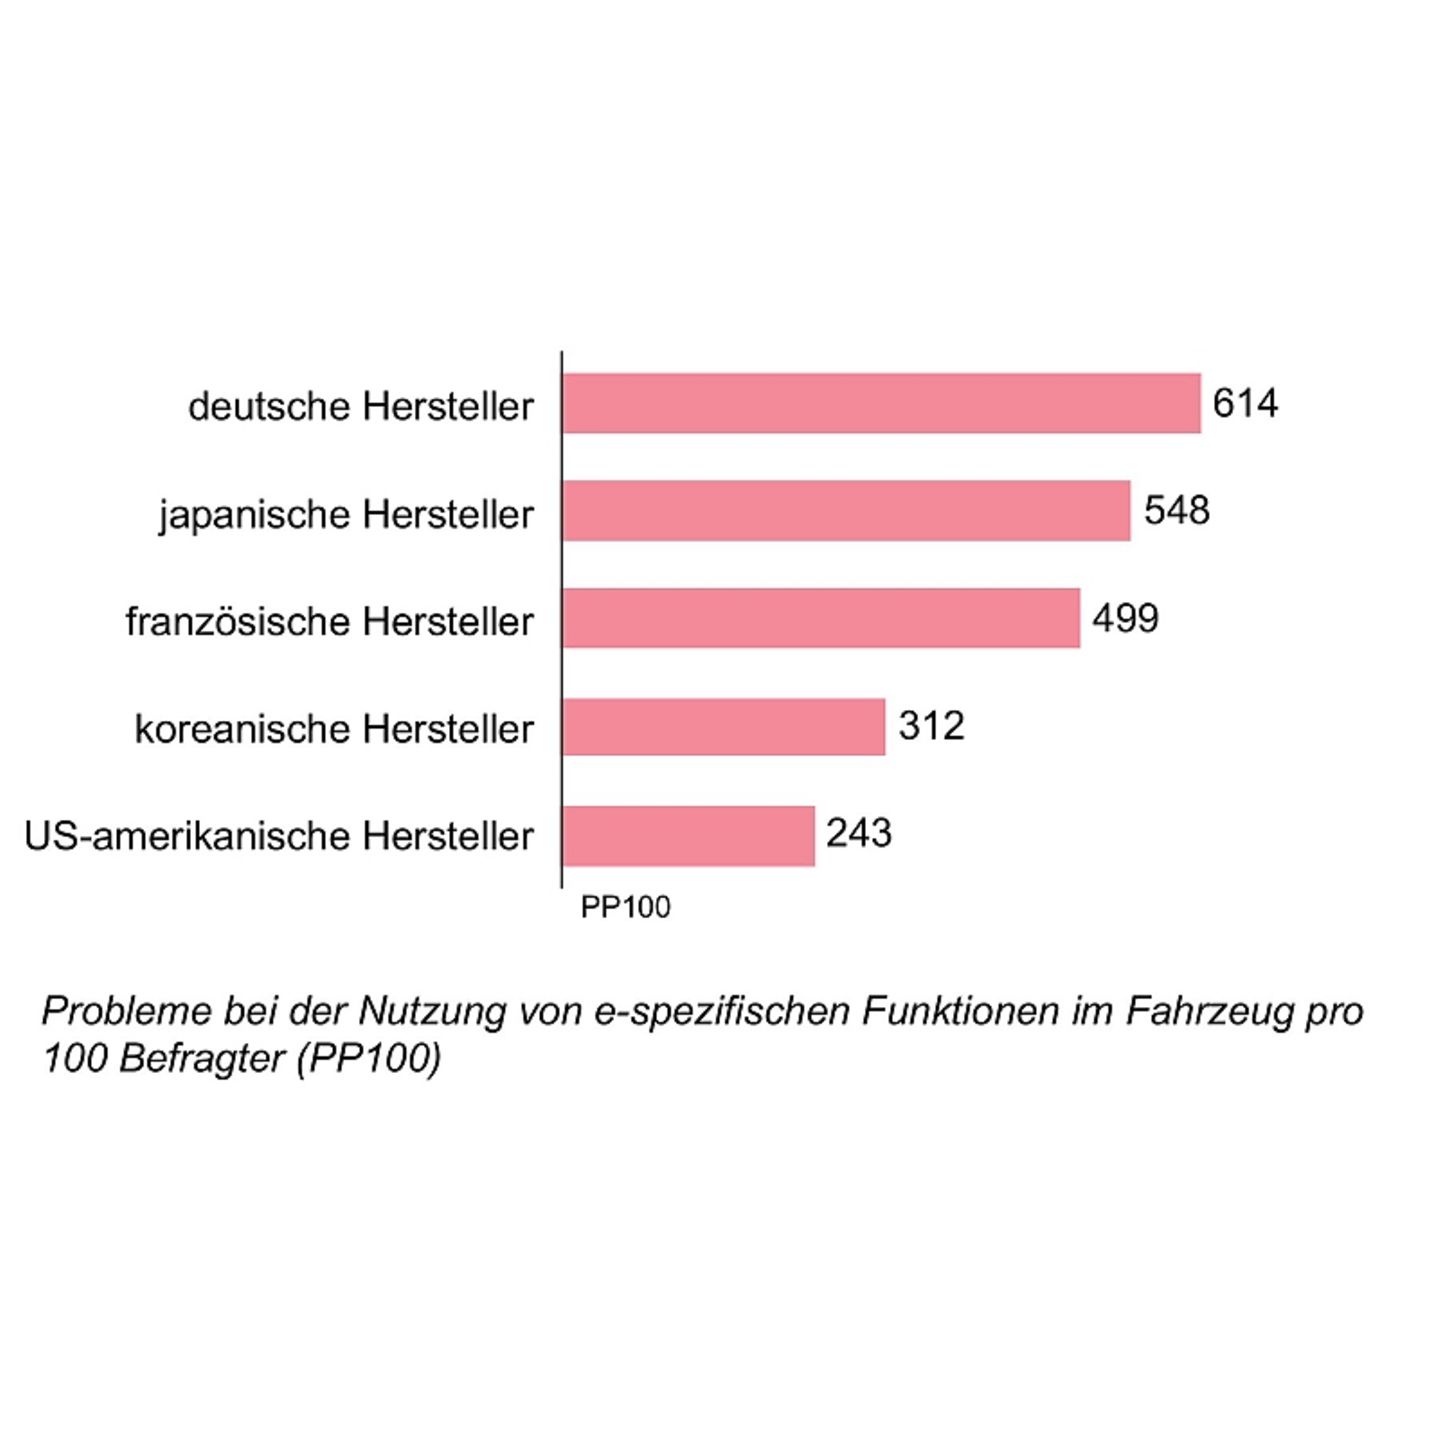 Die Ergebnisse der Umfrage STERN.de